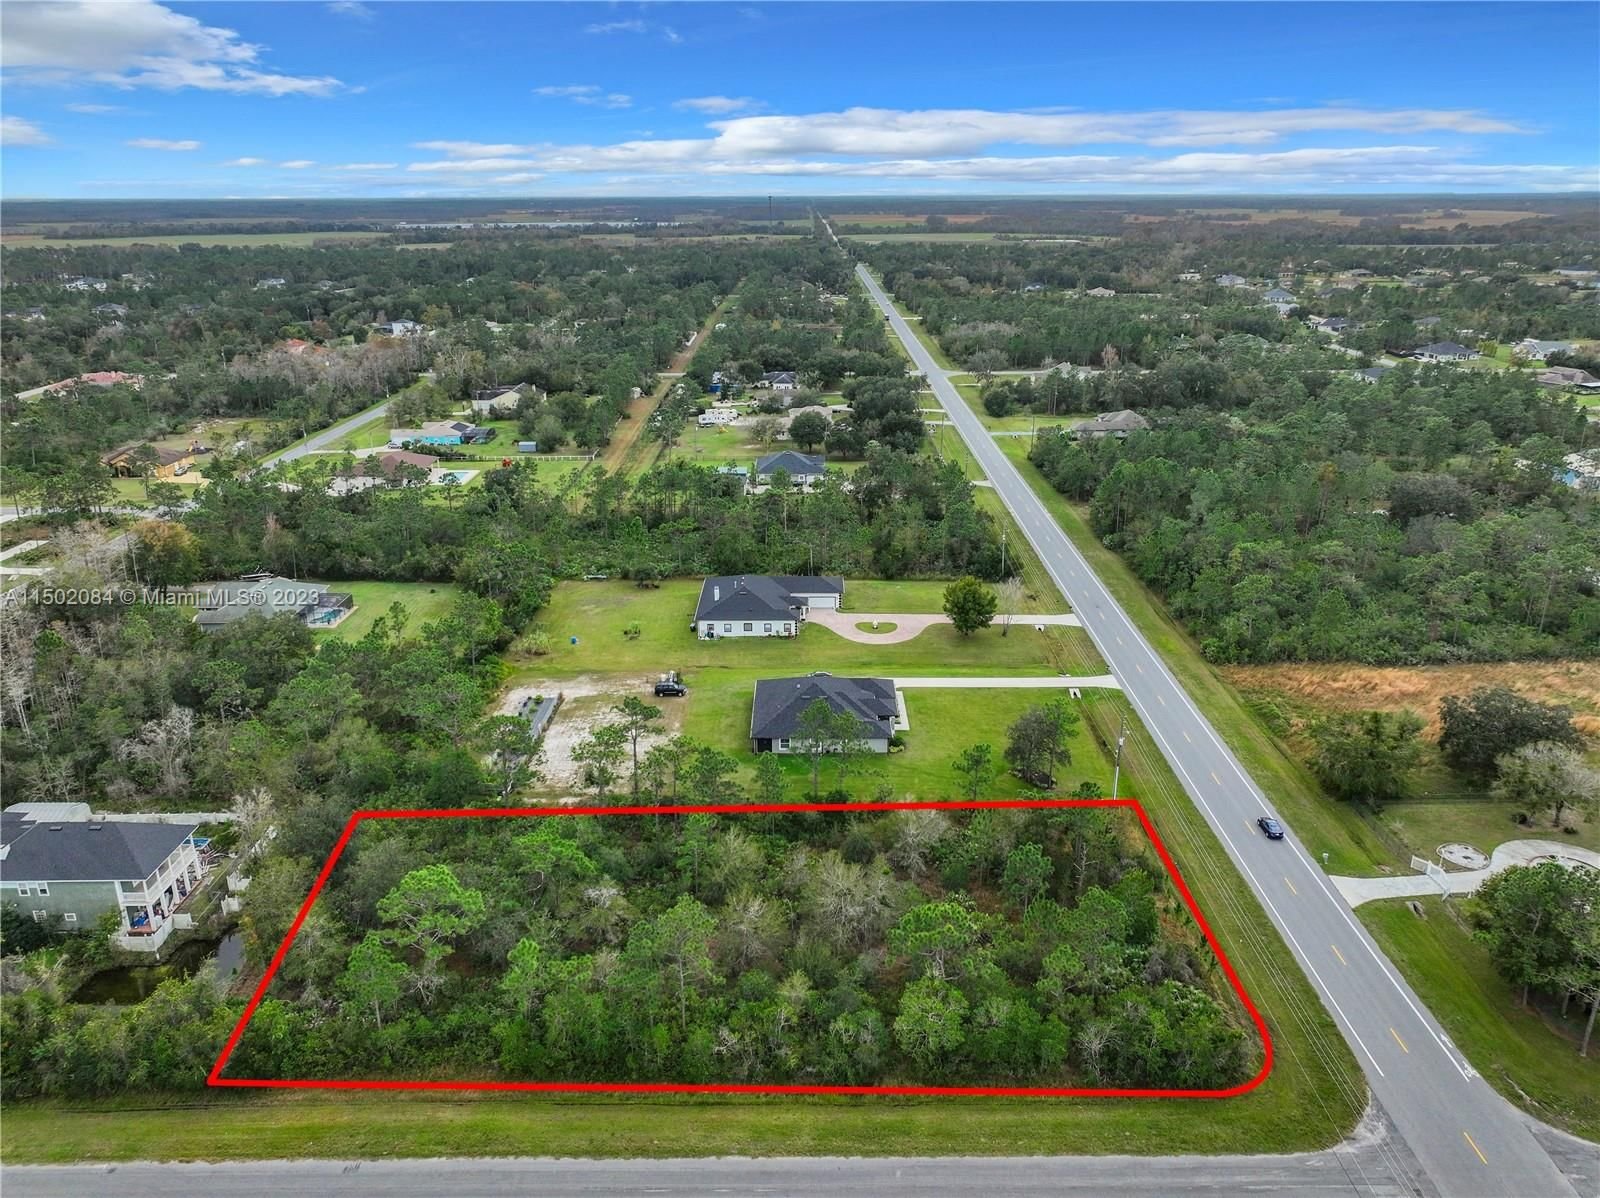 Real estate property located at Lot 1 Dallas Blvd, Orange County, Cape Orlando Estates, Orlando, FL